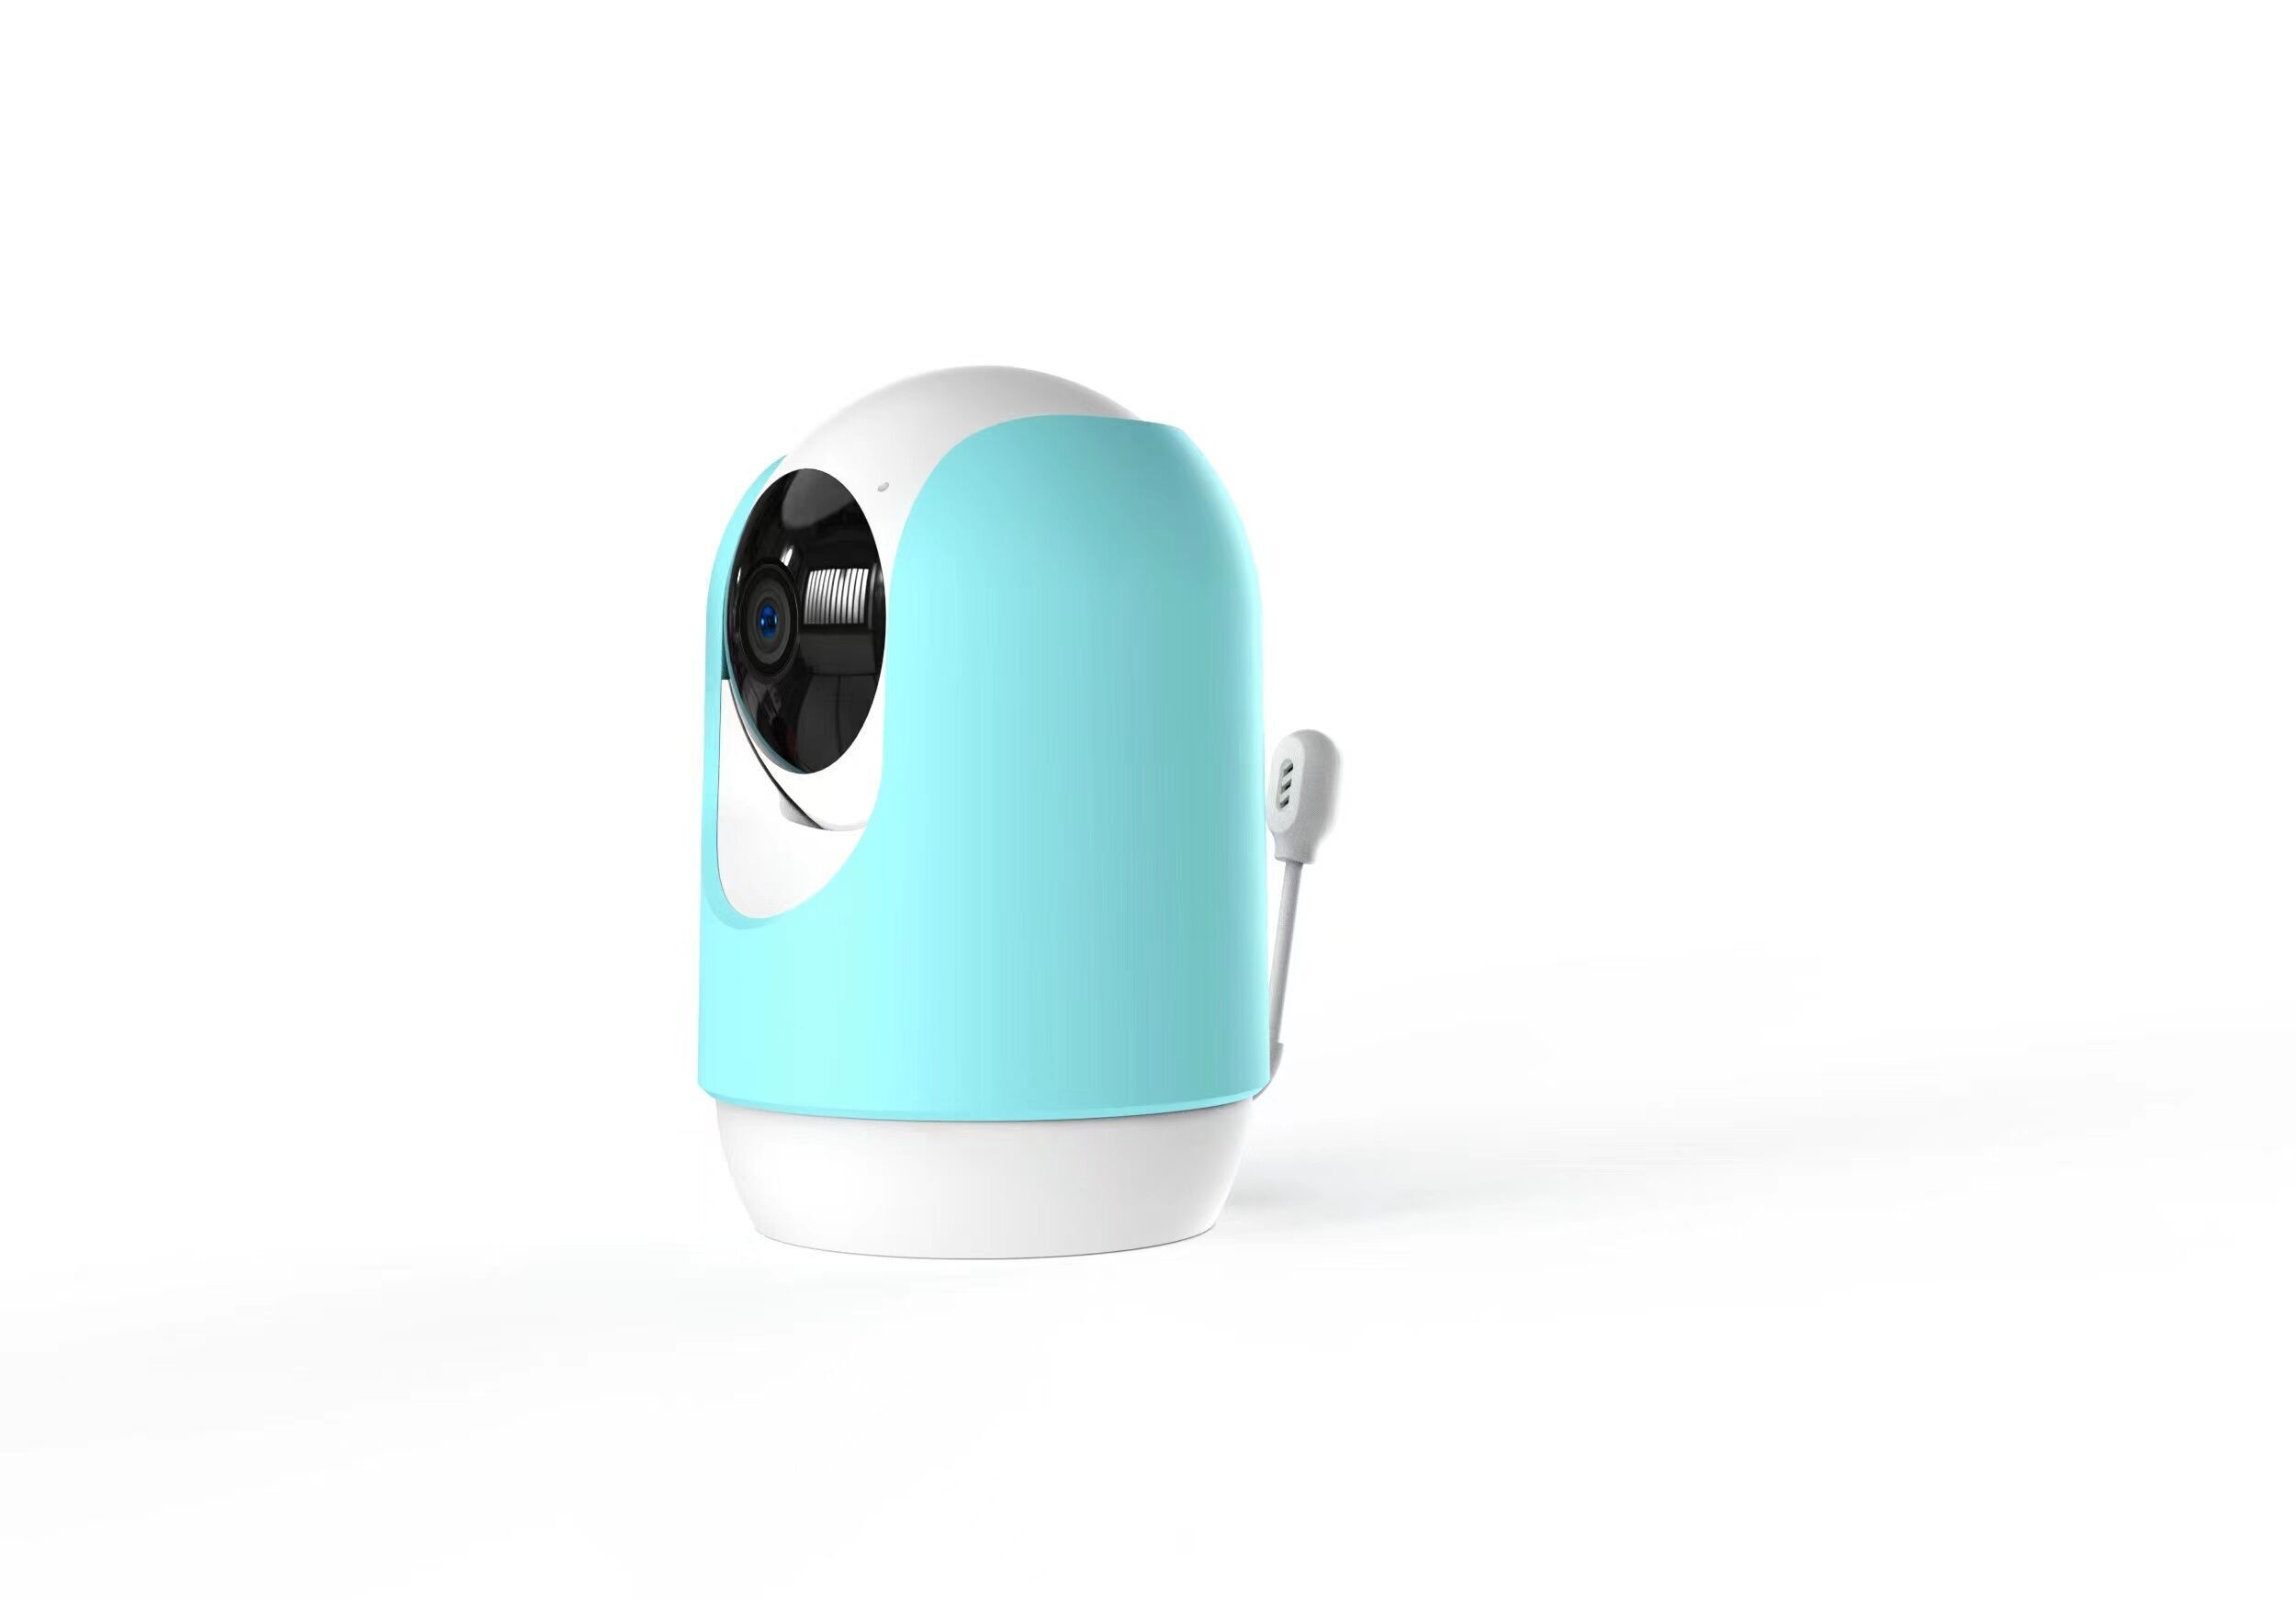 Hellobaby Babyfoon - Babyphone avec caméra et vision nocturne - 4 berceuses  - petit et